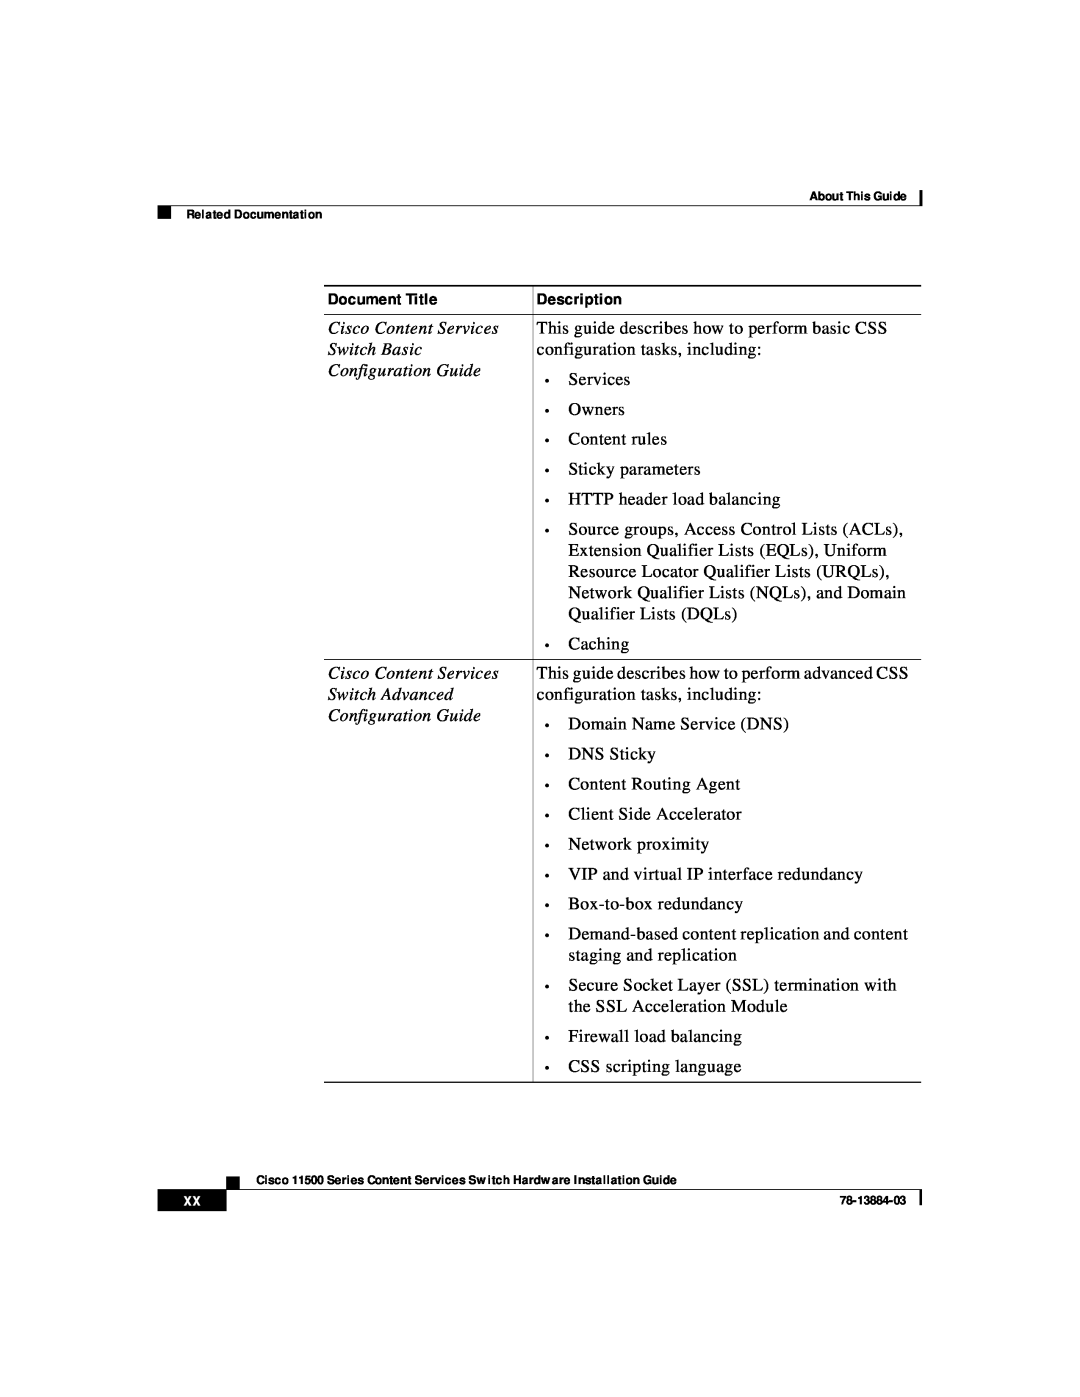 Cisco Systems 11500 Series manual Document Title, Description 